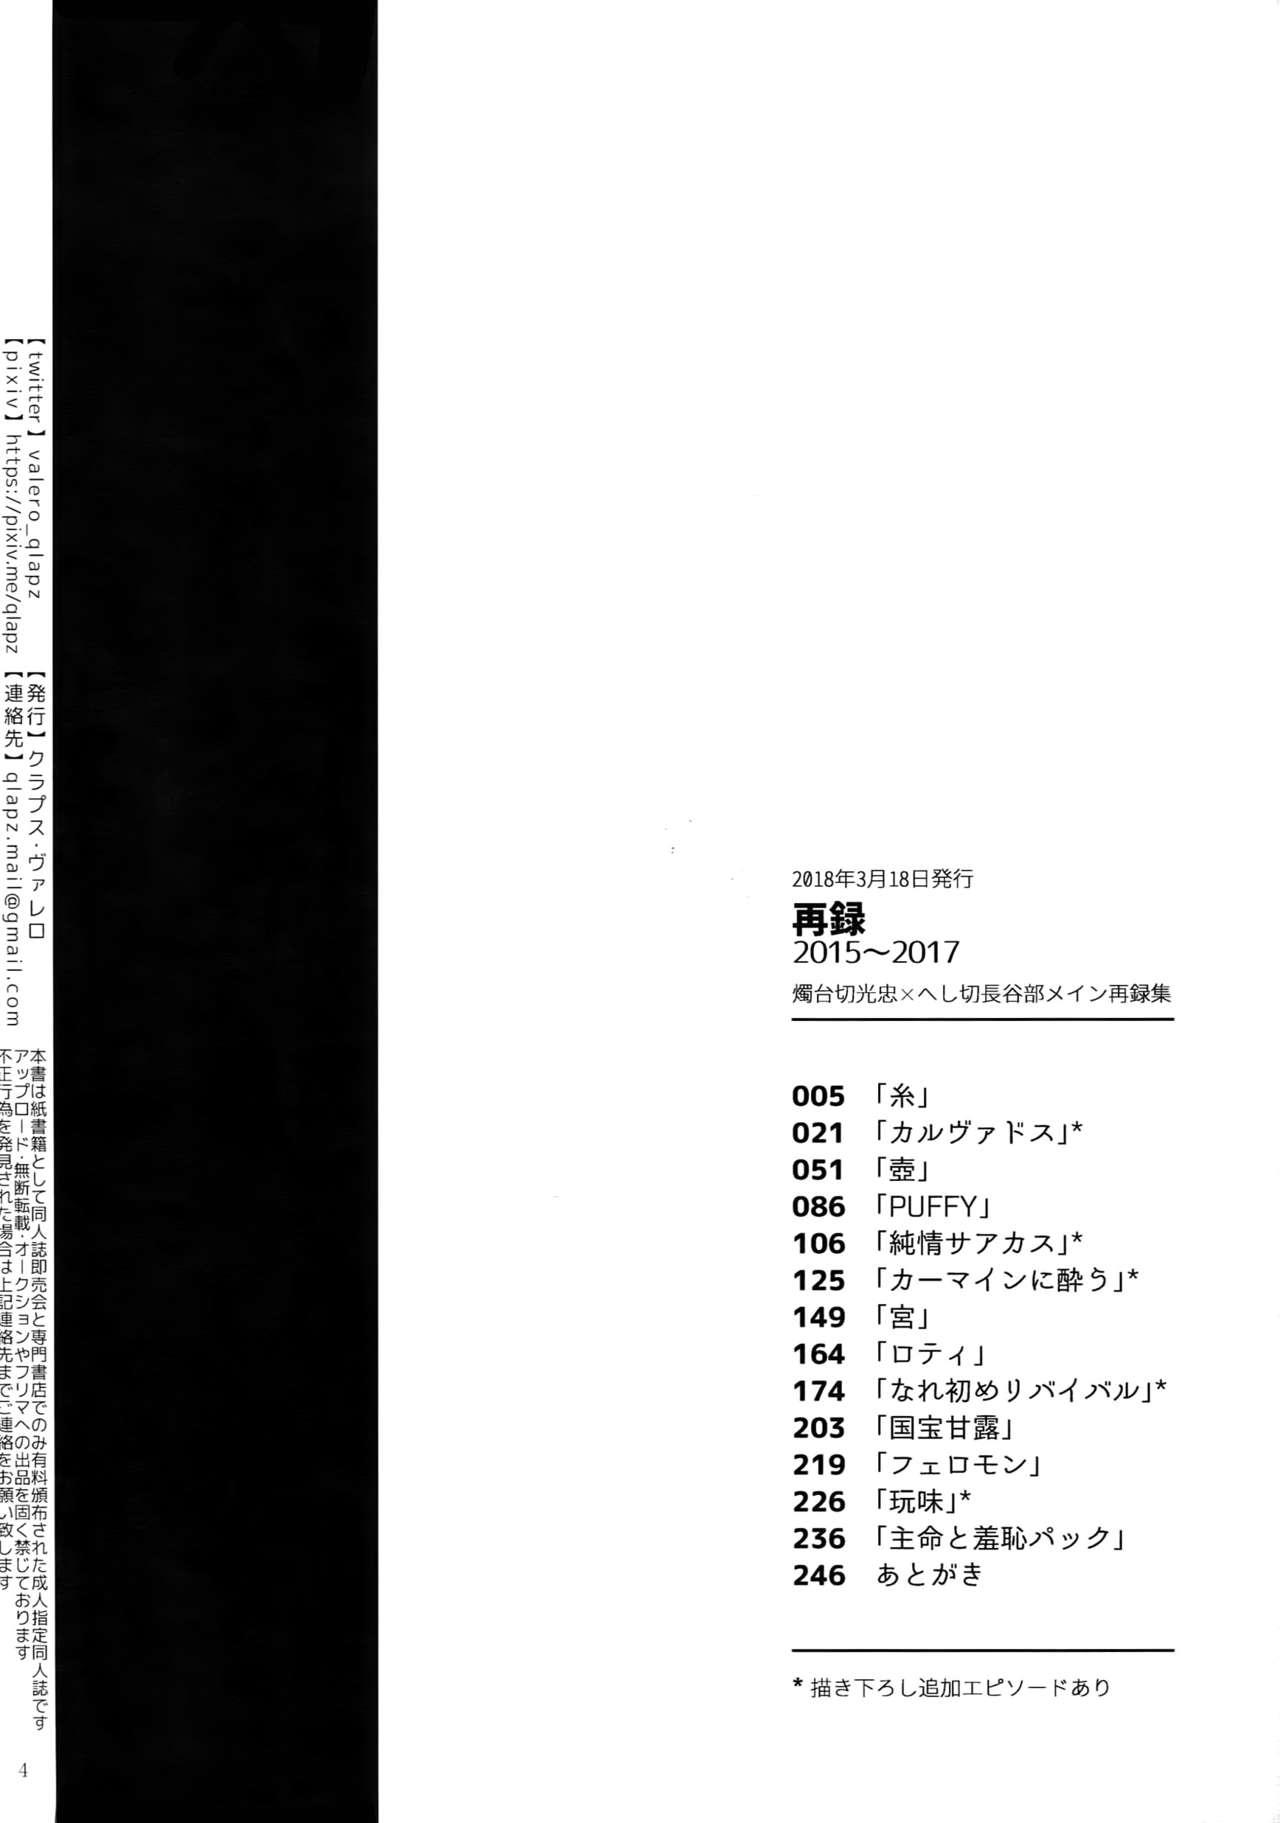 Amateur Sairoku 2015 ~ 2017 - Touken ranbu Pigtails - Page 3